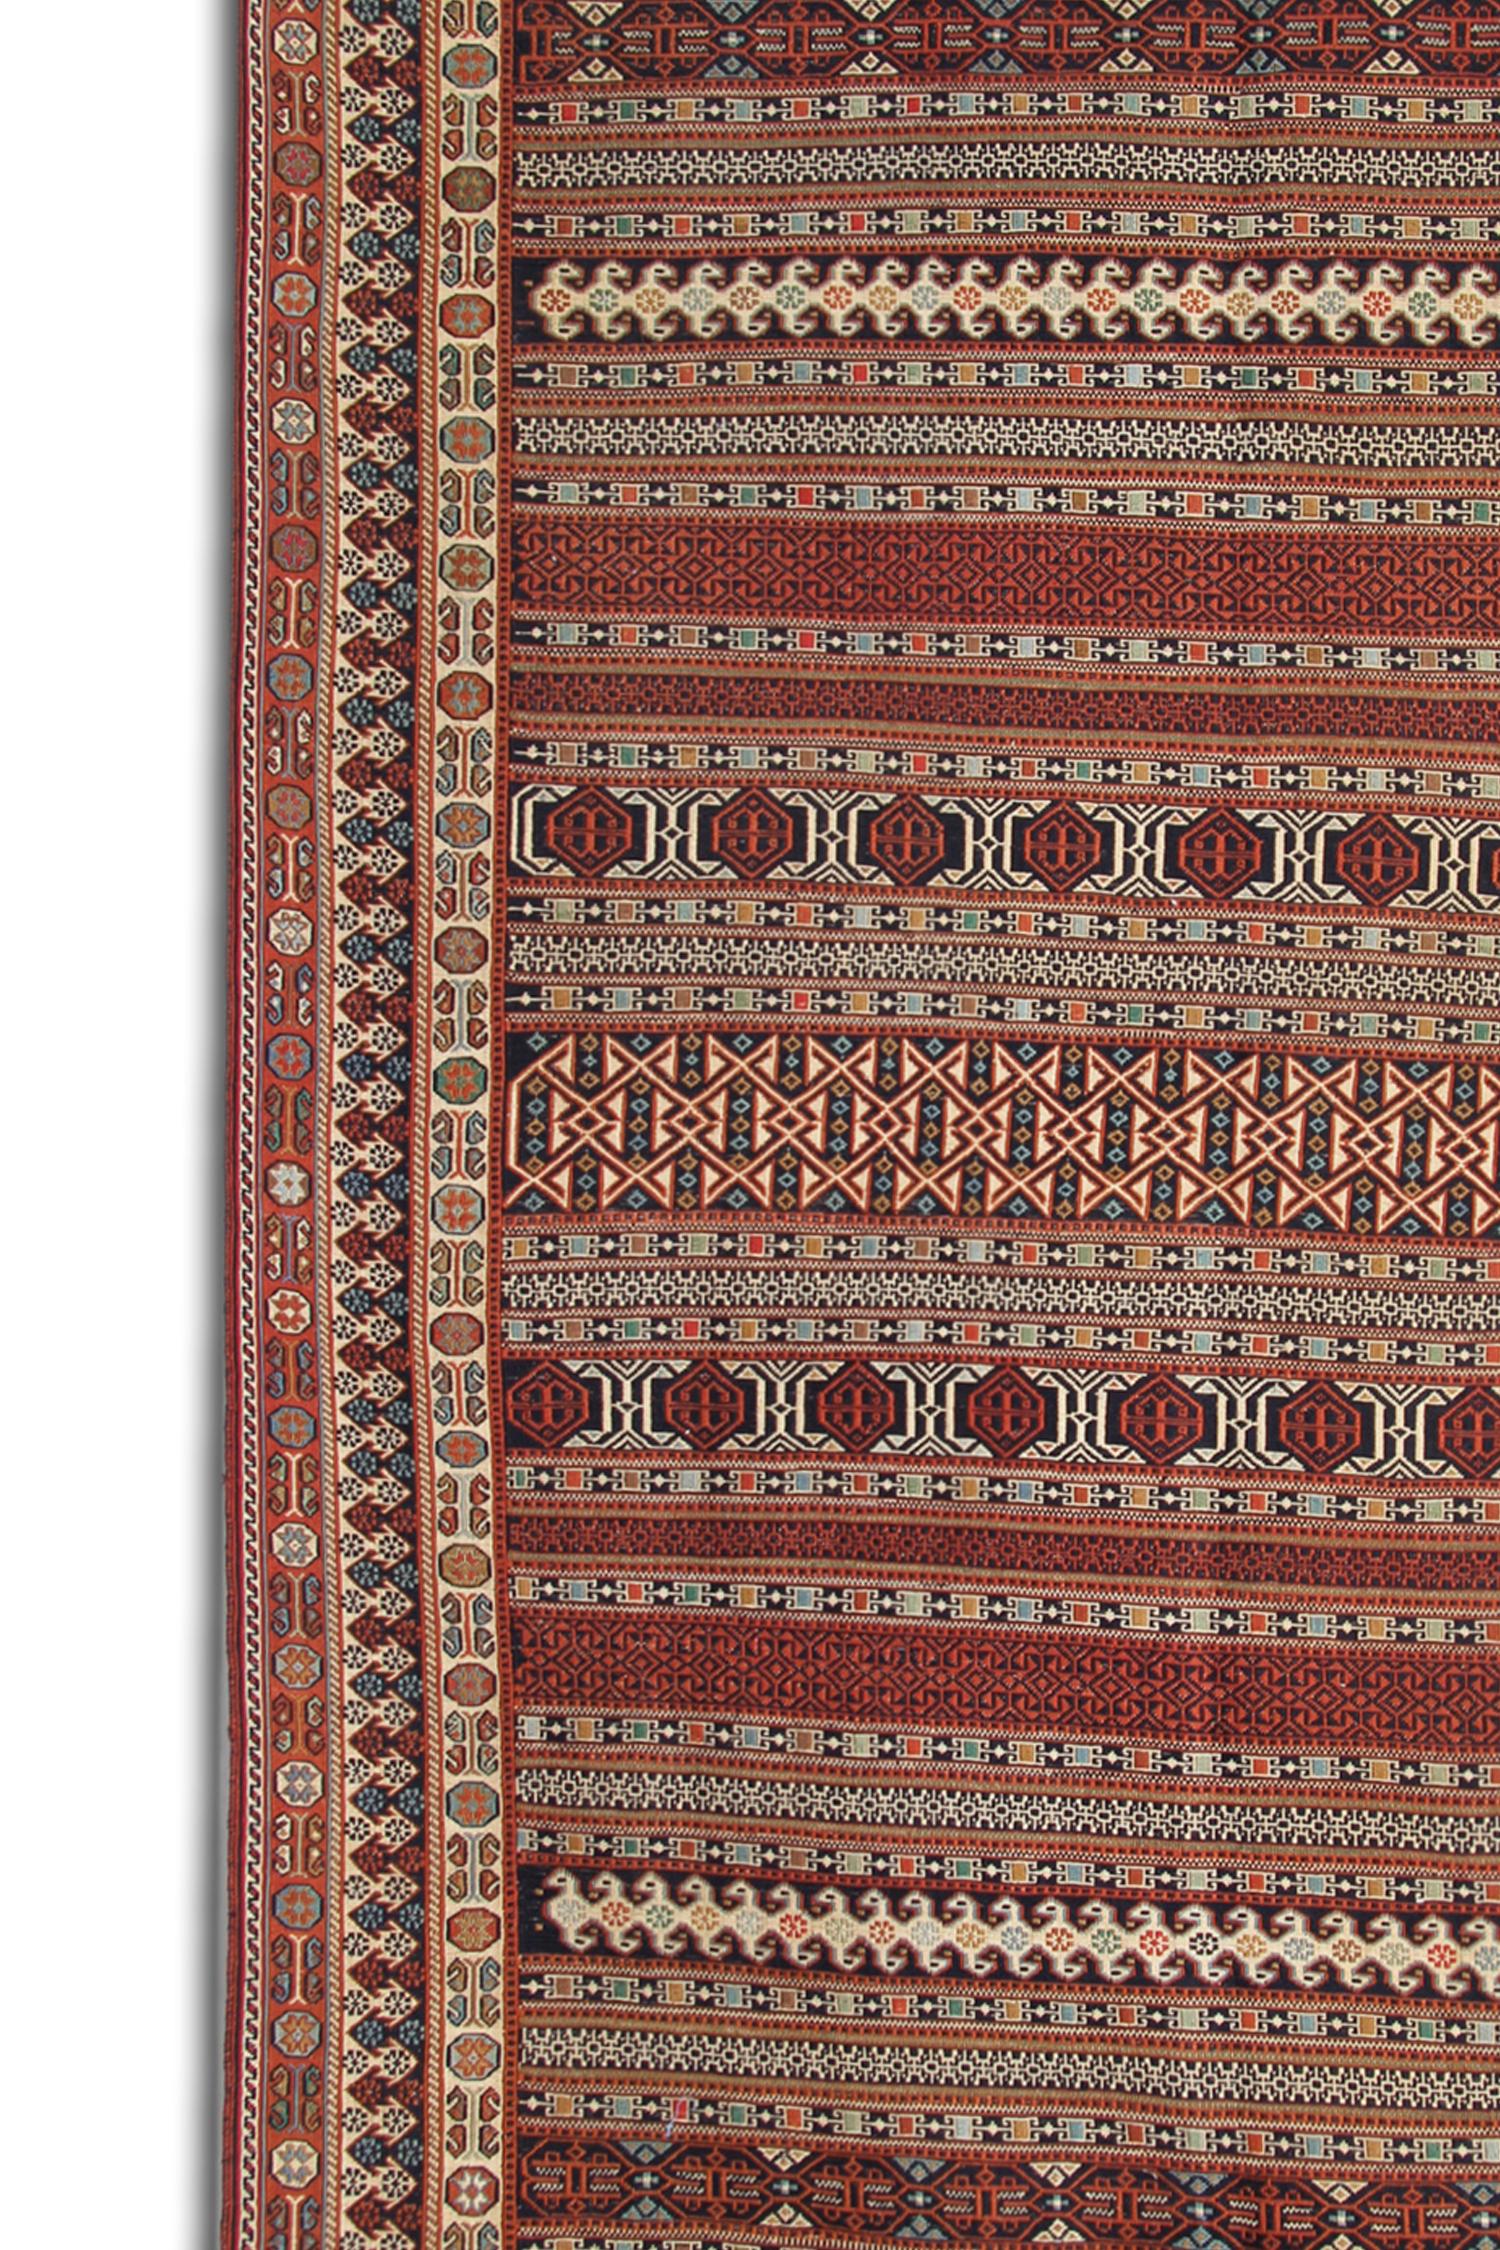 Dieser alte Soumak-Teppich wurde von Nomaden im späten 20. Jahrhundert, um 1980, hergestellt. Das Design zeigt ein rustikales, dekoratives Streifendesign, gewebt in einem tiefen Rot mit Akzentfarben in Rostbeige und Creme. 
Mit geometrischen